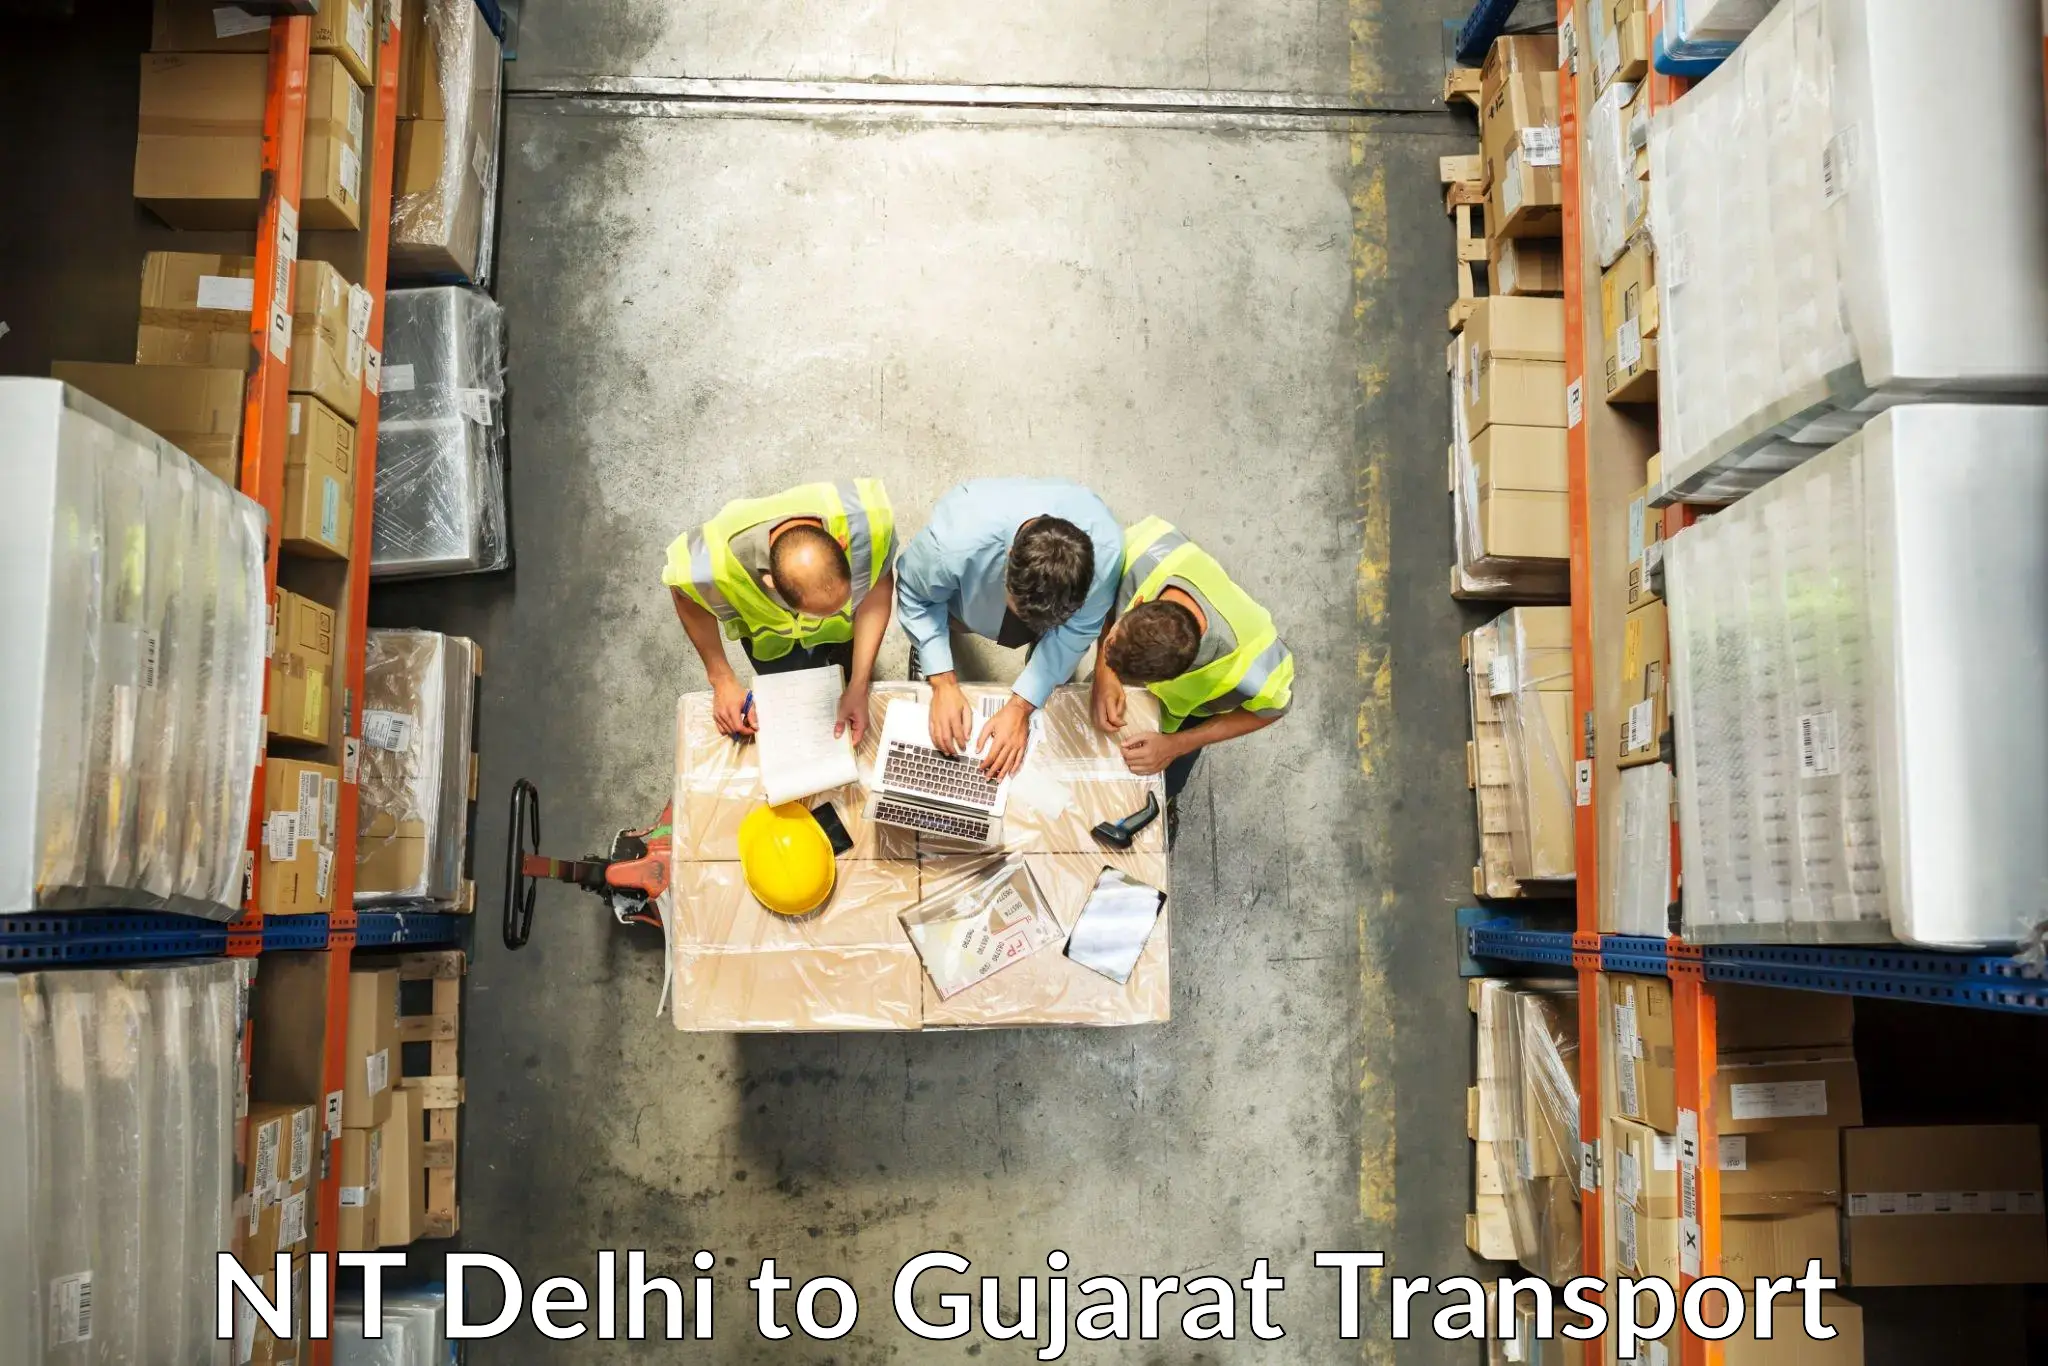 Furniture transport service NIT Delhi to Gondal